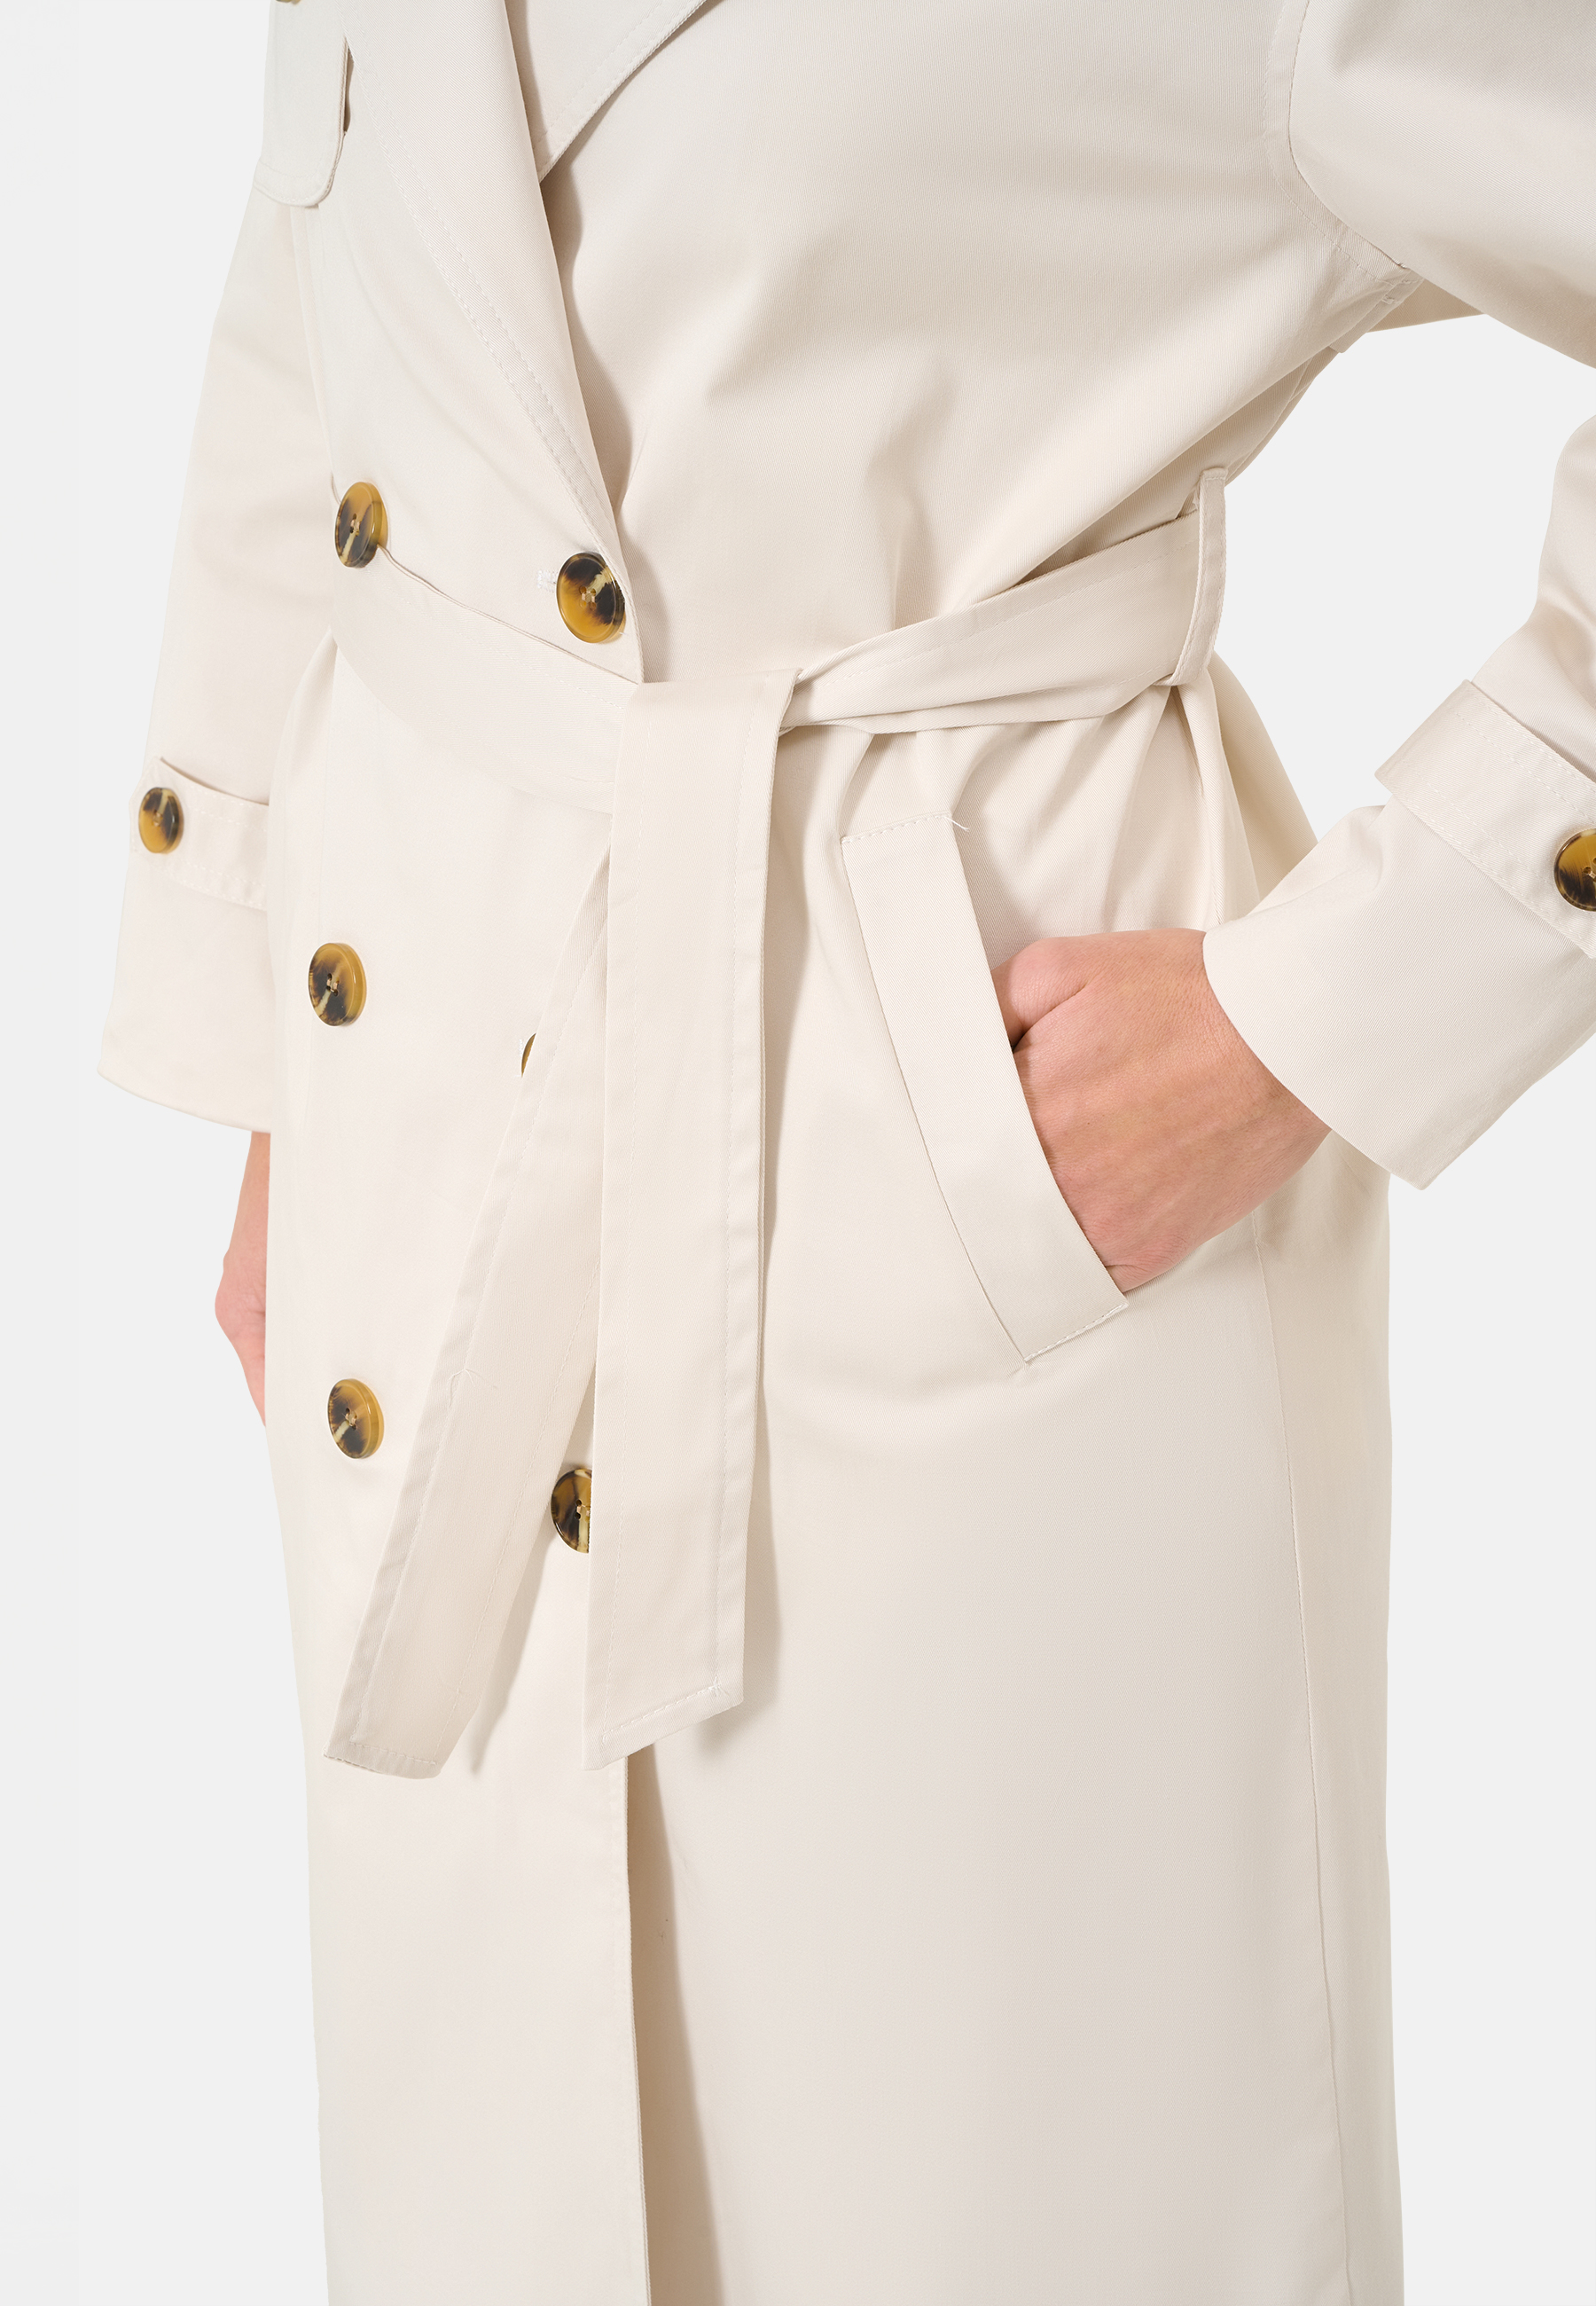 Damen Textilmantel Greta in Weiß von Ricano - Detailansicht seitliche offene Einschubtasche ohne Verschluss, passenden Trenchcoat Gürtel, Zwei Knopfreihen zum Verschließen